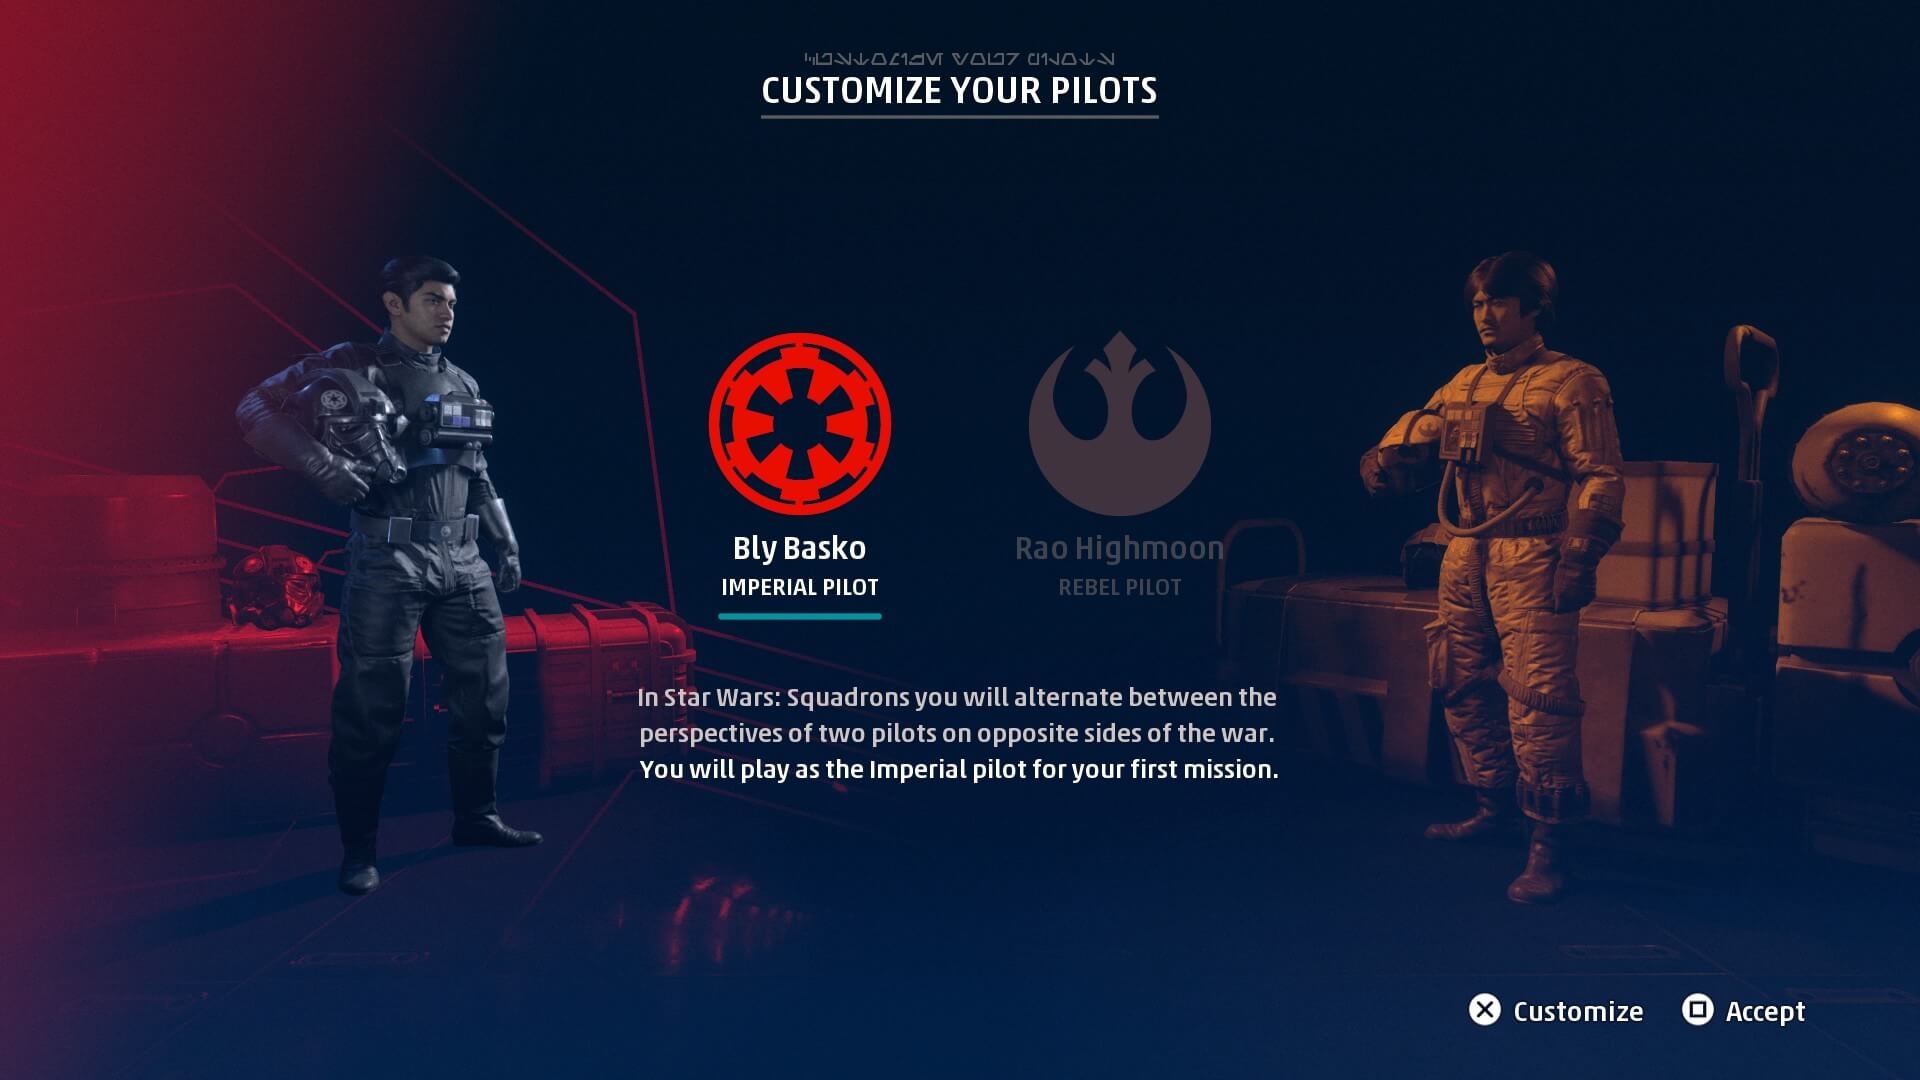 En el juego vamos a ser tanto piloto del imperio como de la nueva republica